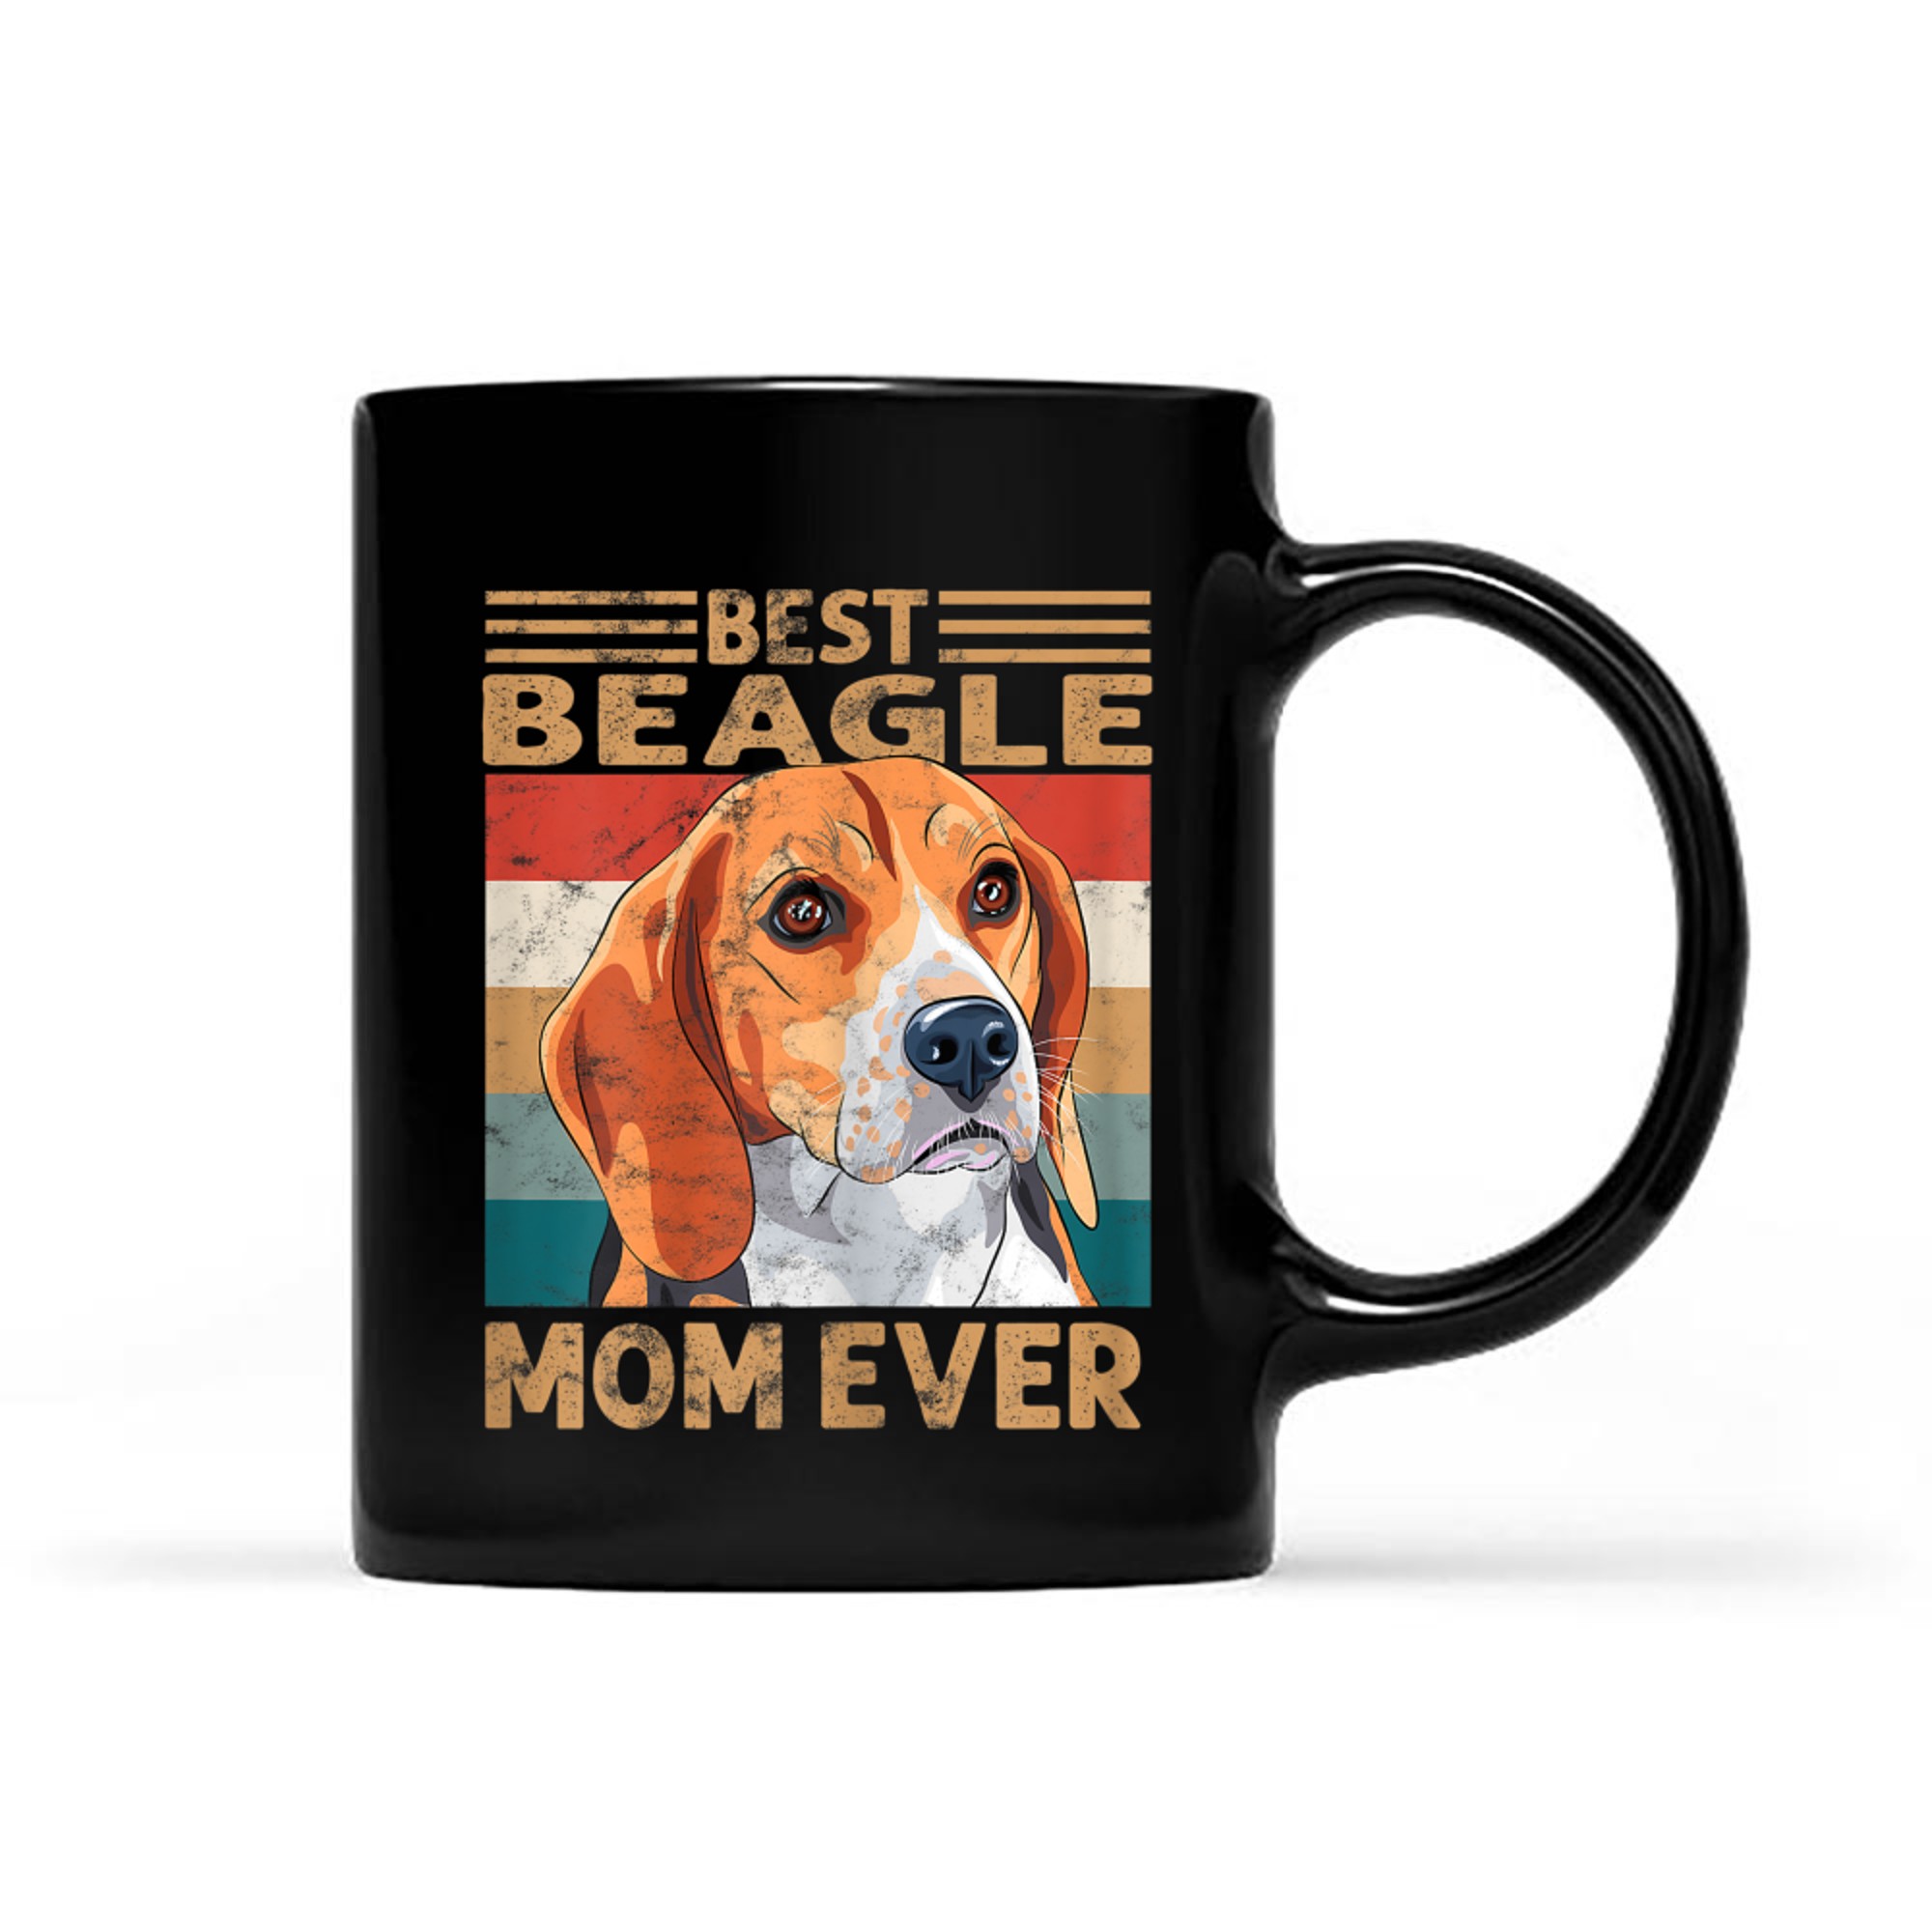 best peagle mom ever vintage dog mom gifts mug black